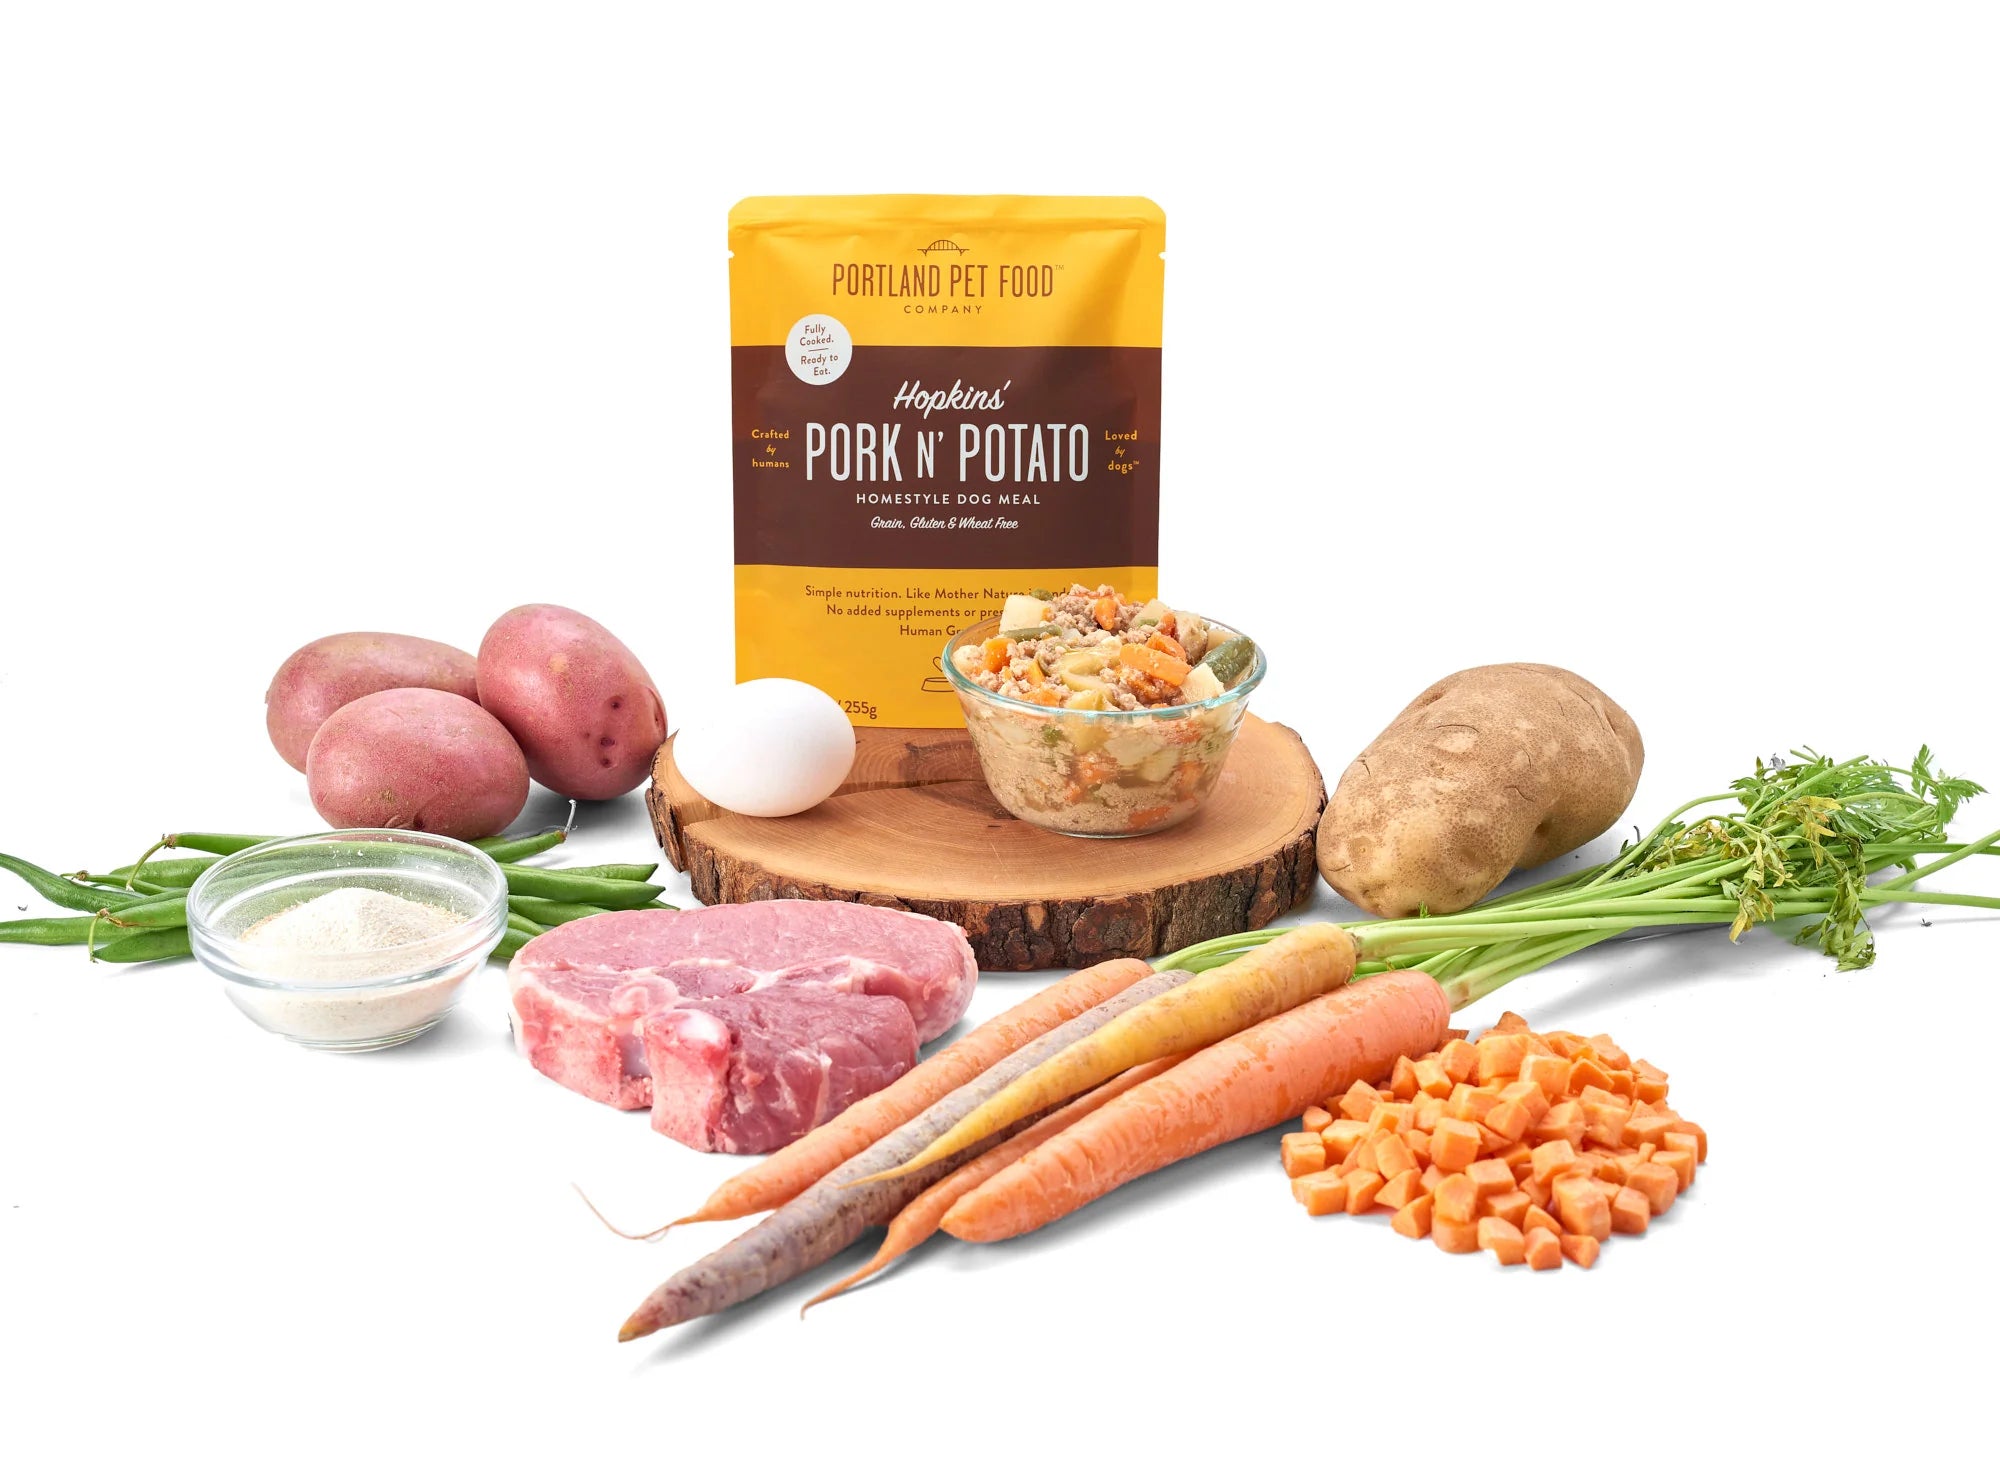 Portland Pet Food Company - Hopkins' Pork N' Potato Homestyle Dog Meal